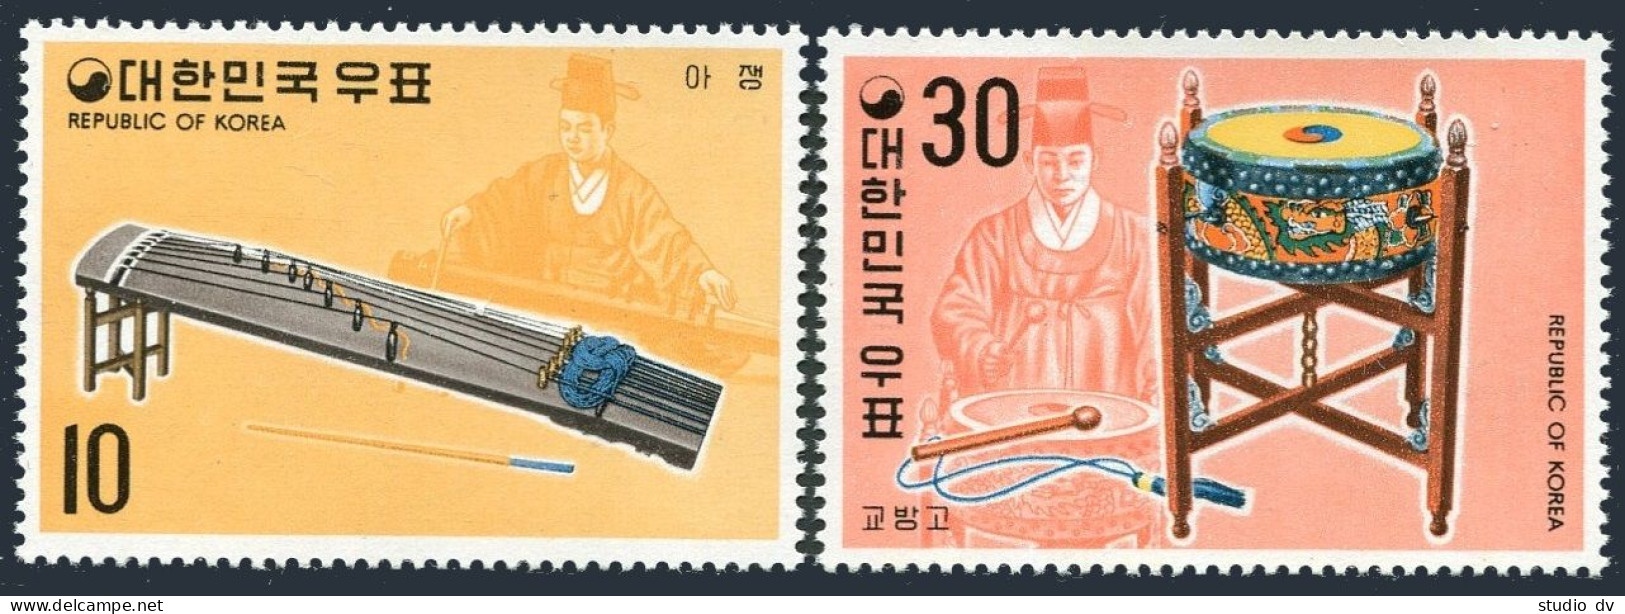 Korea South 887-888, MNH. Michel 889-890. Musical Instruments, 06.20.1974. - Corée Du Sud